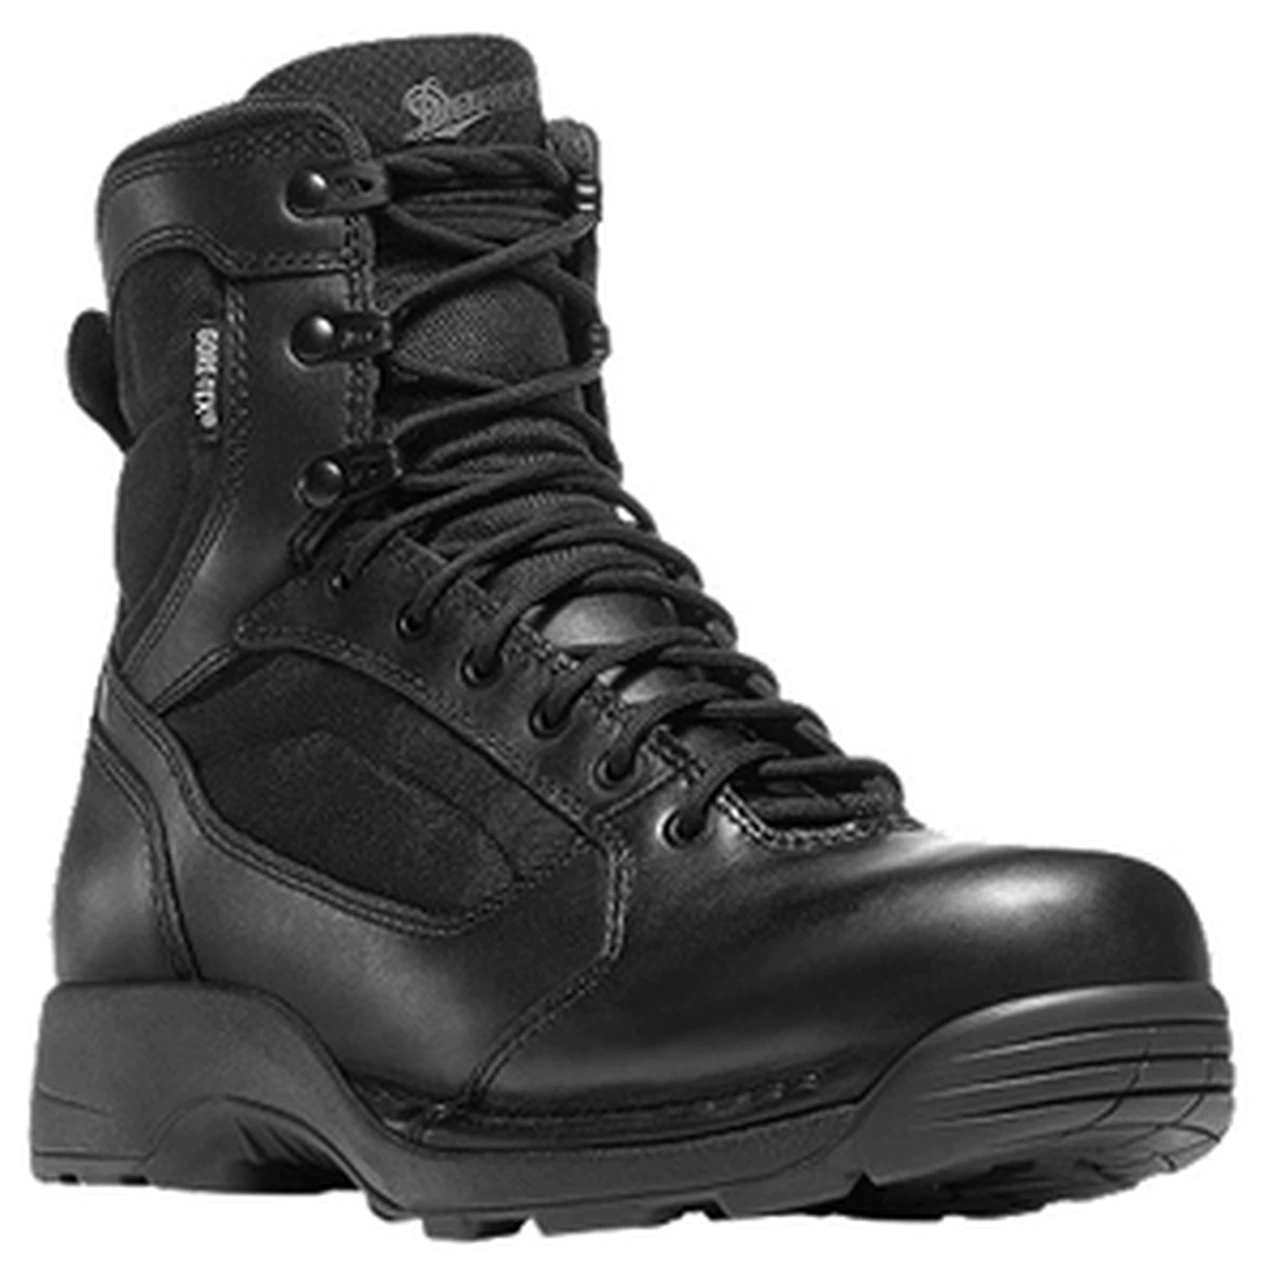 Danner Men's Striker Torrent Side-Zip 6" Black Boots - $74.98 (Free S/H over $100)